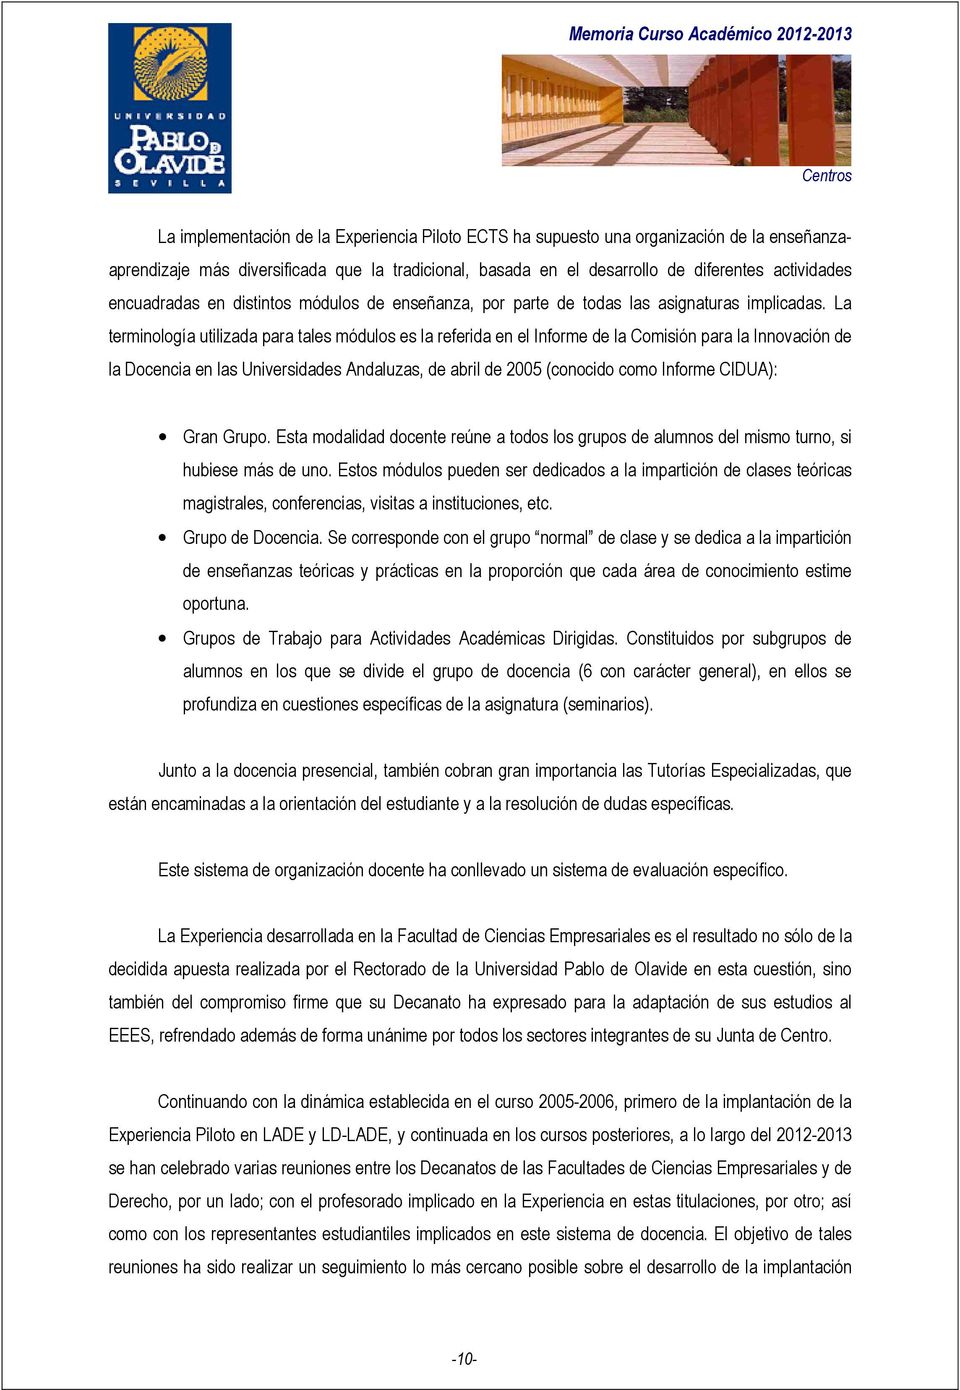 La terminología utilizada para tales módulos es la referida en el Informe de la Comisión para la Innovación de la Docencia en las Universidades Andaluzas, de abril de 2005 (conocido como Informe